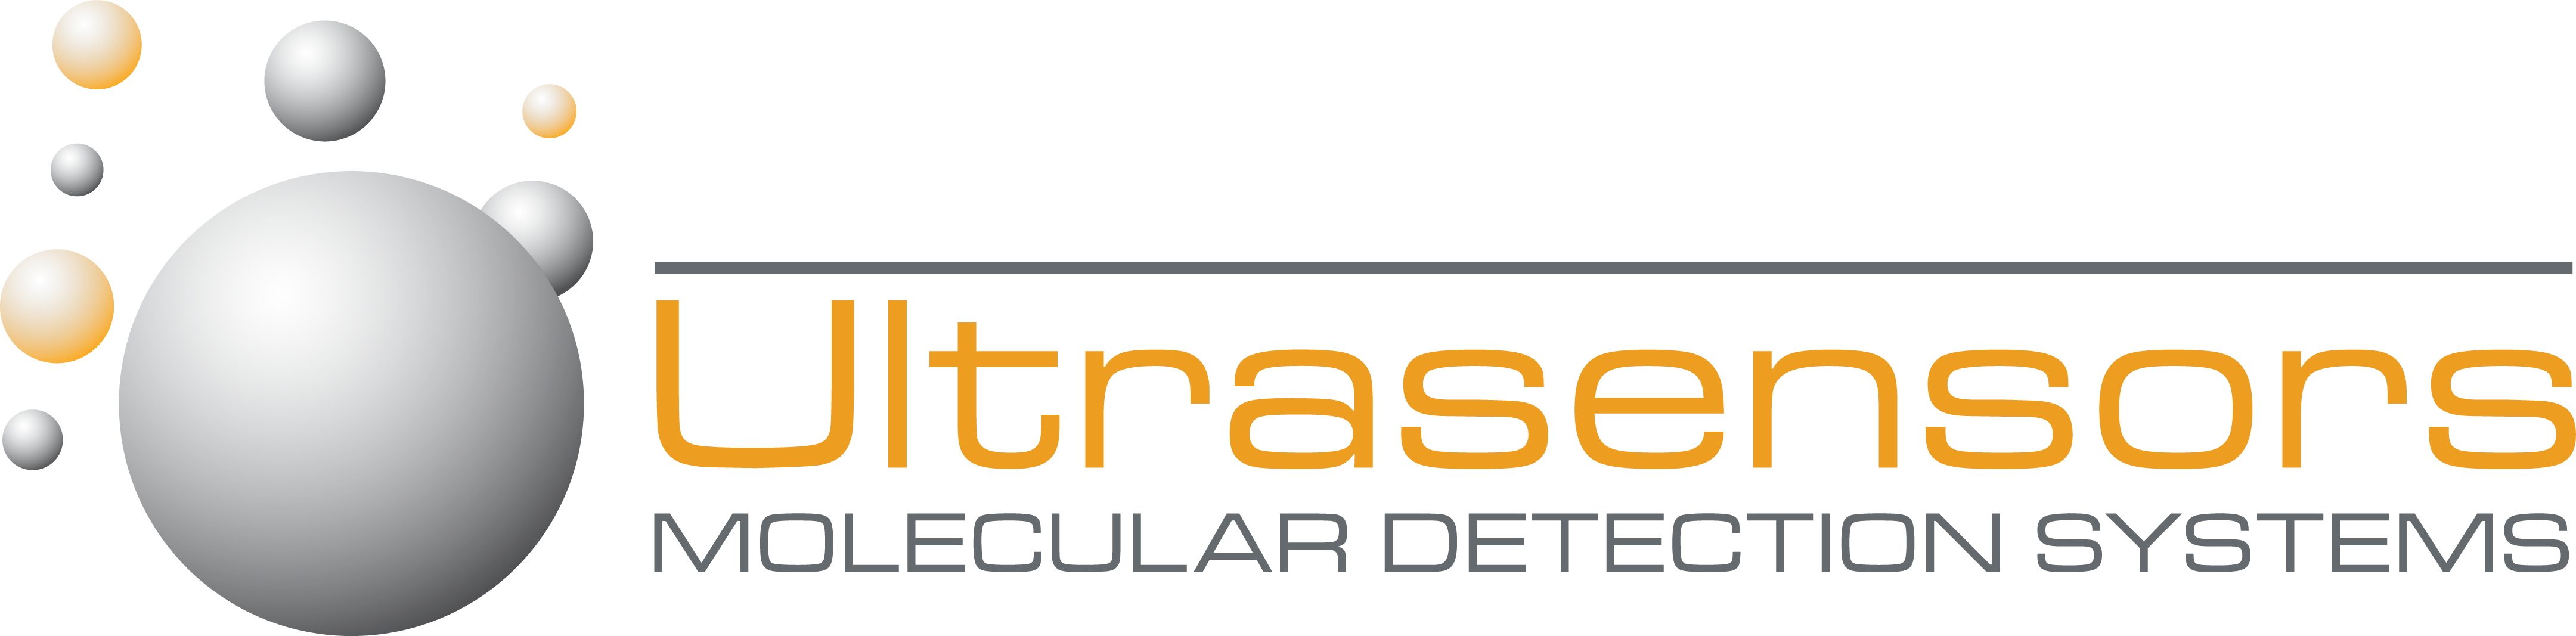 Ultrasensors logo